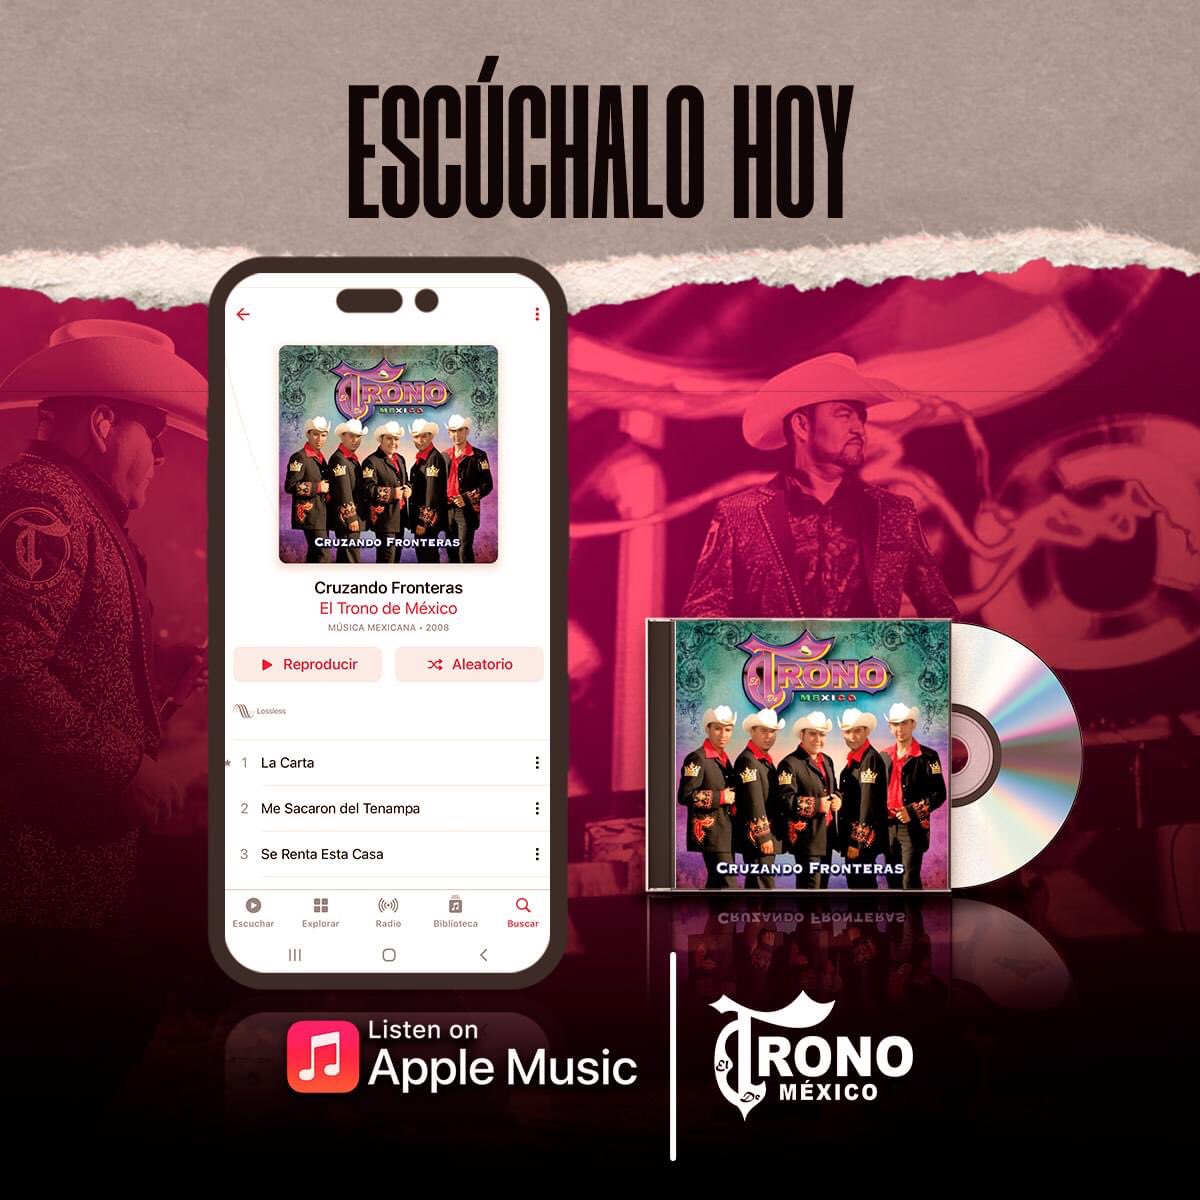 Familia los invitamos a escuchar el Álbum #CruzandoFronteras en #AppleMusic #ElTronoDeMéxico #Oraaa 
music.apple.com/mx/album/cruza…